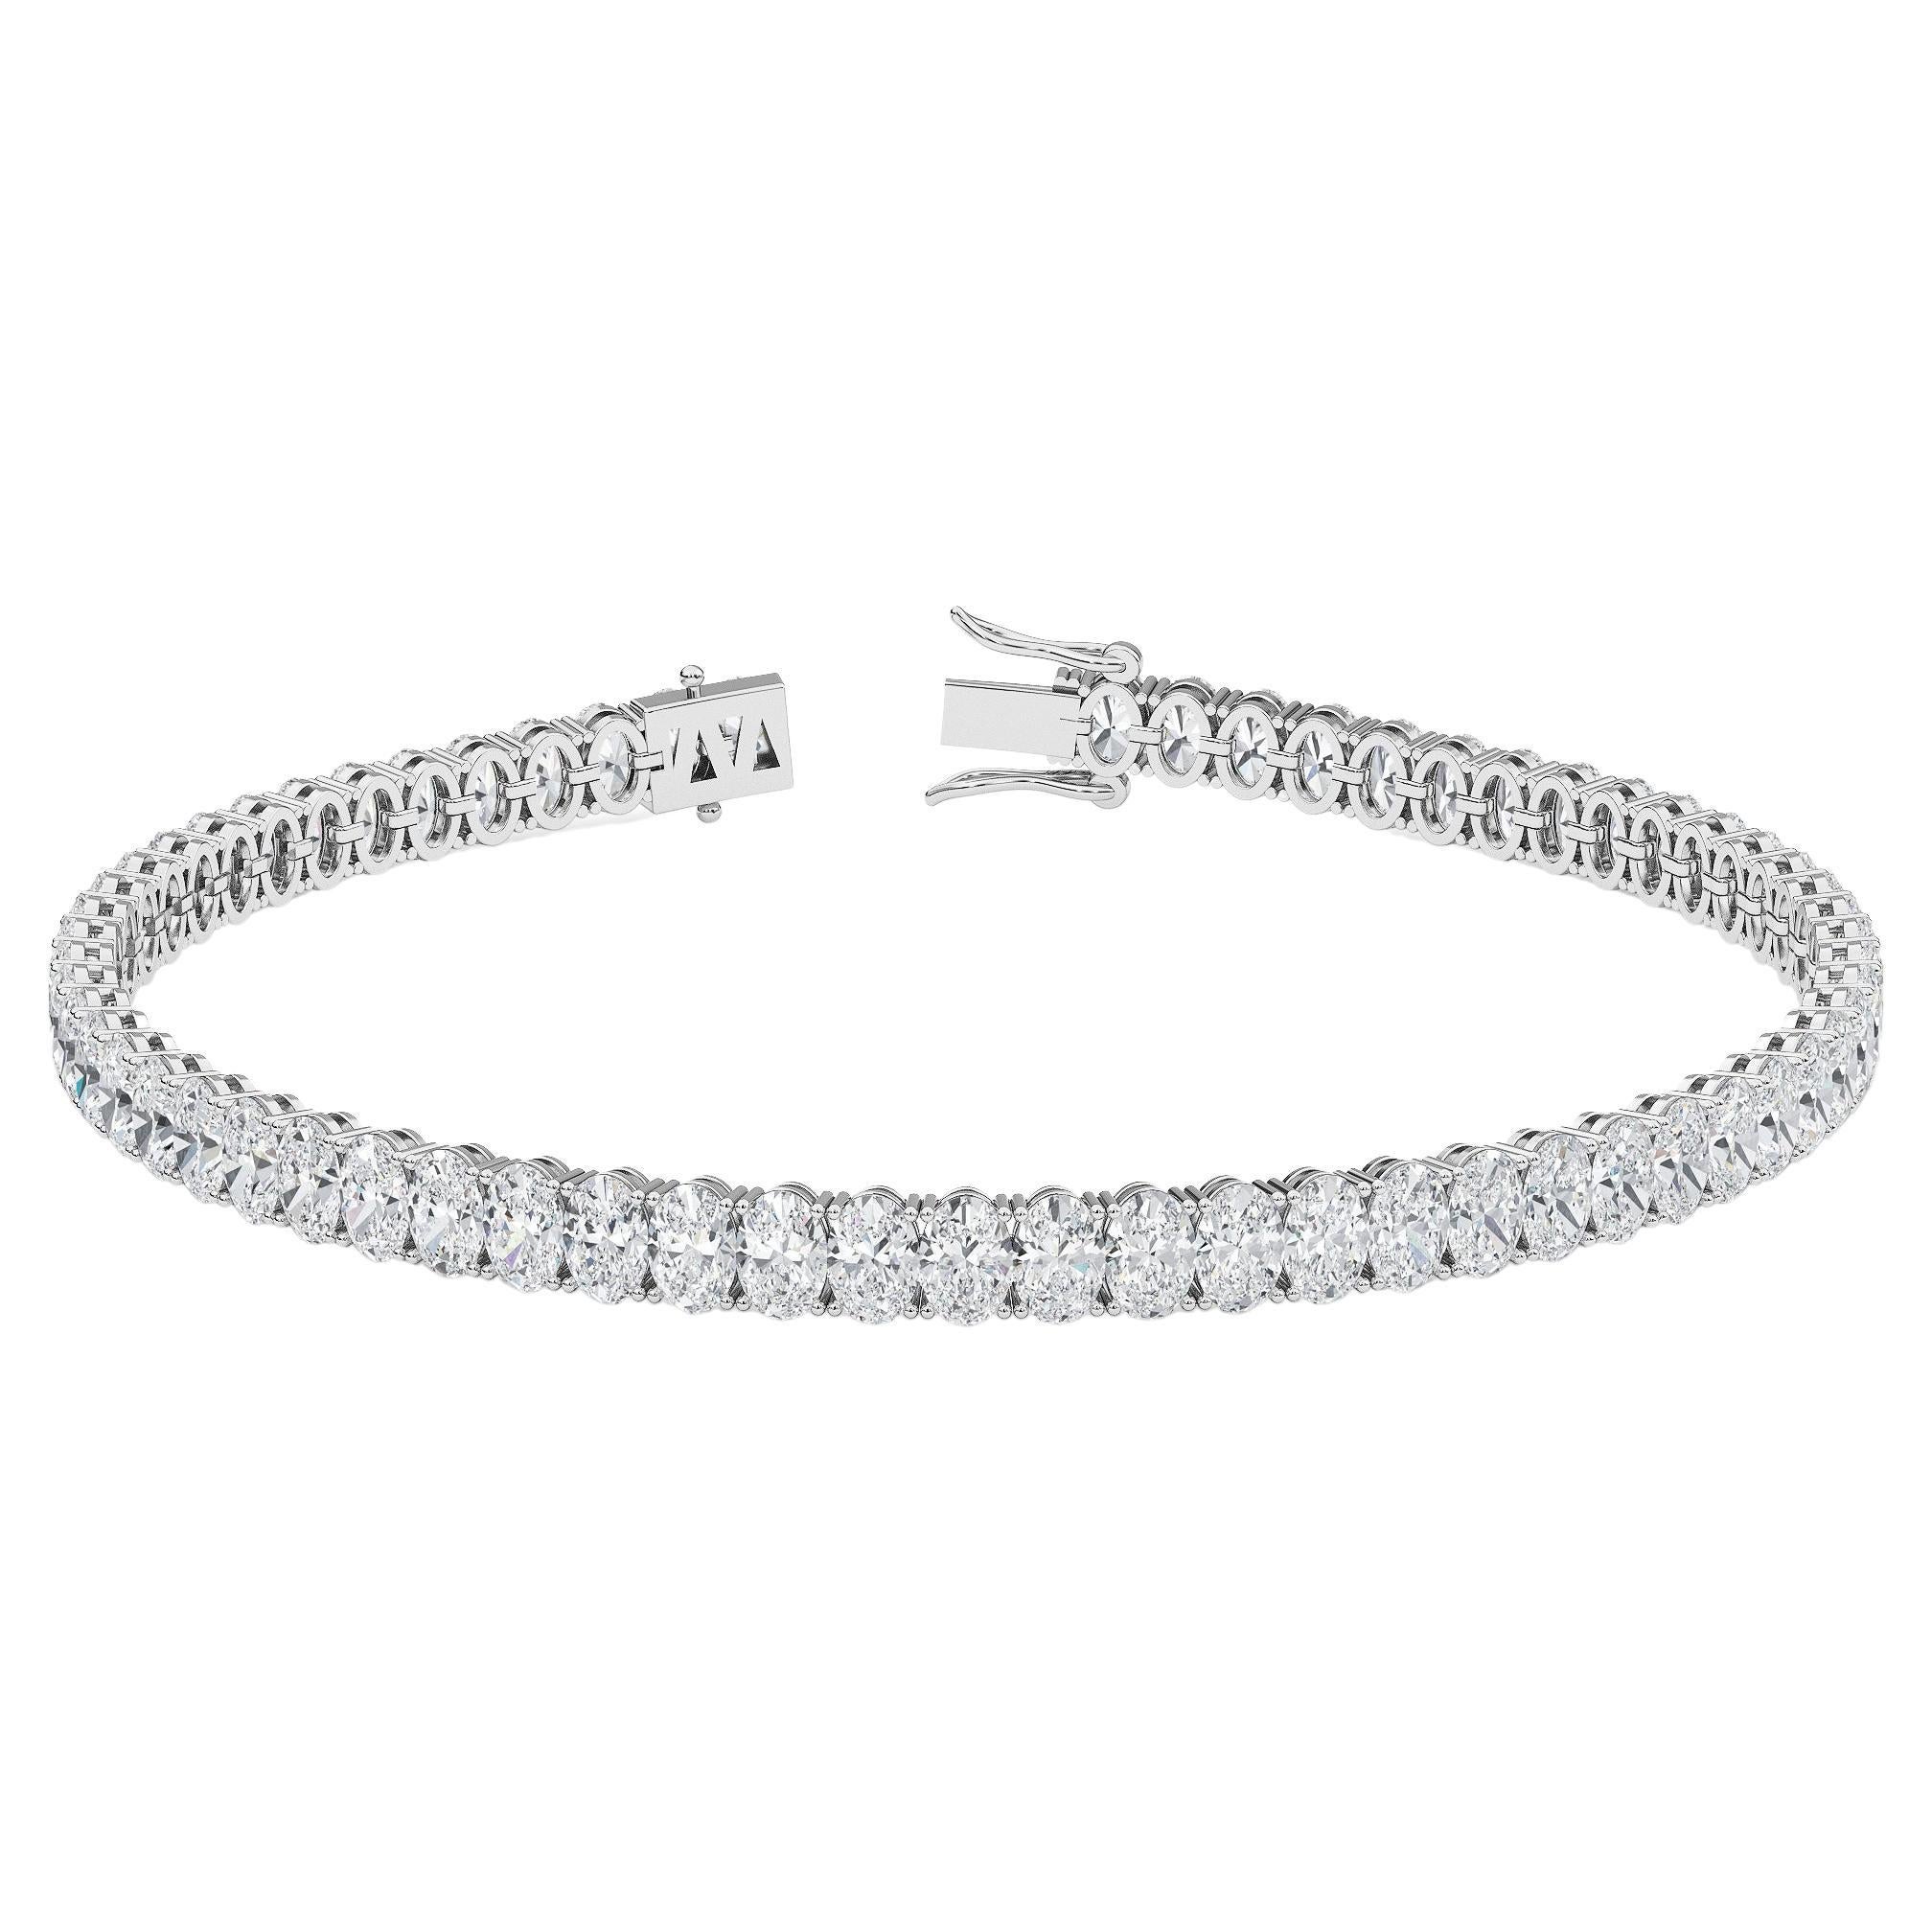 Bracelet tennis en diamants naturels de forme ovale de 5 carats poids total